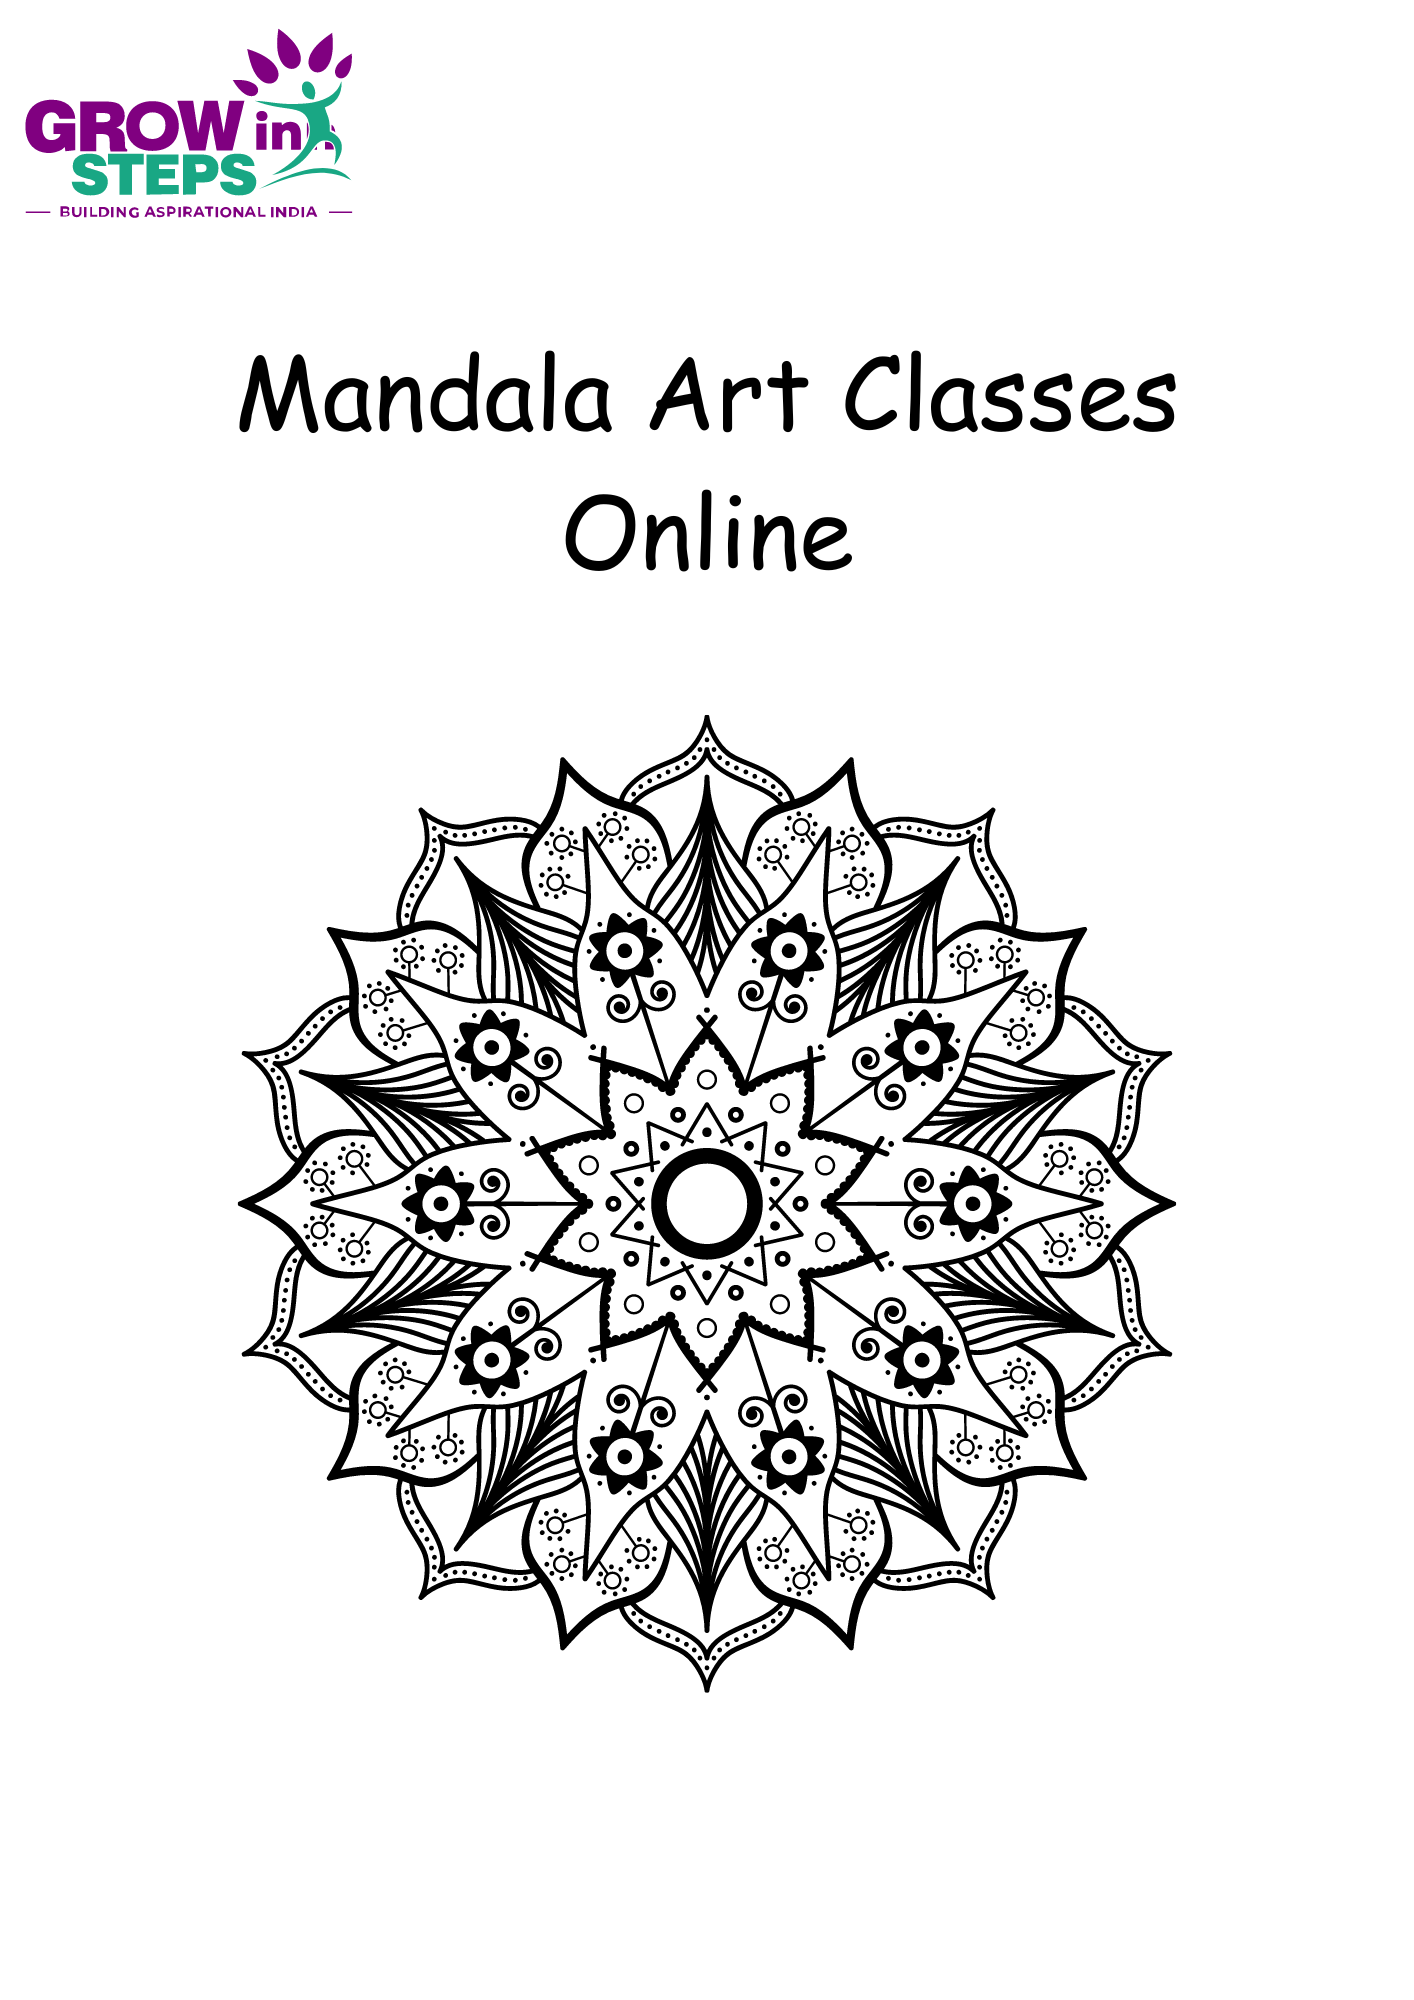 Online Mandala Art Classes - Grow Inn Steps